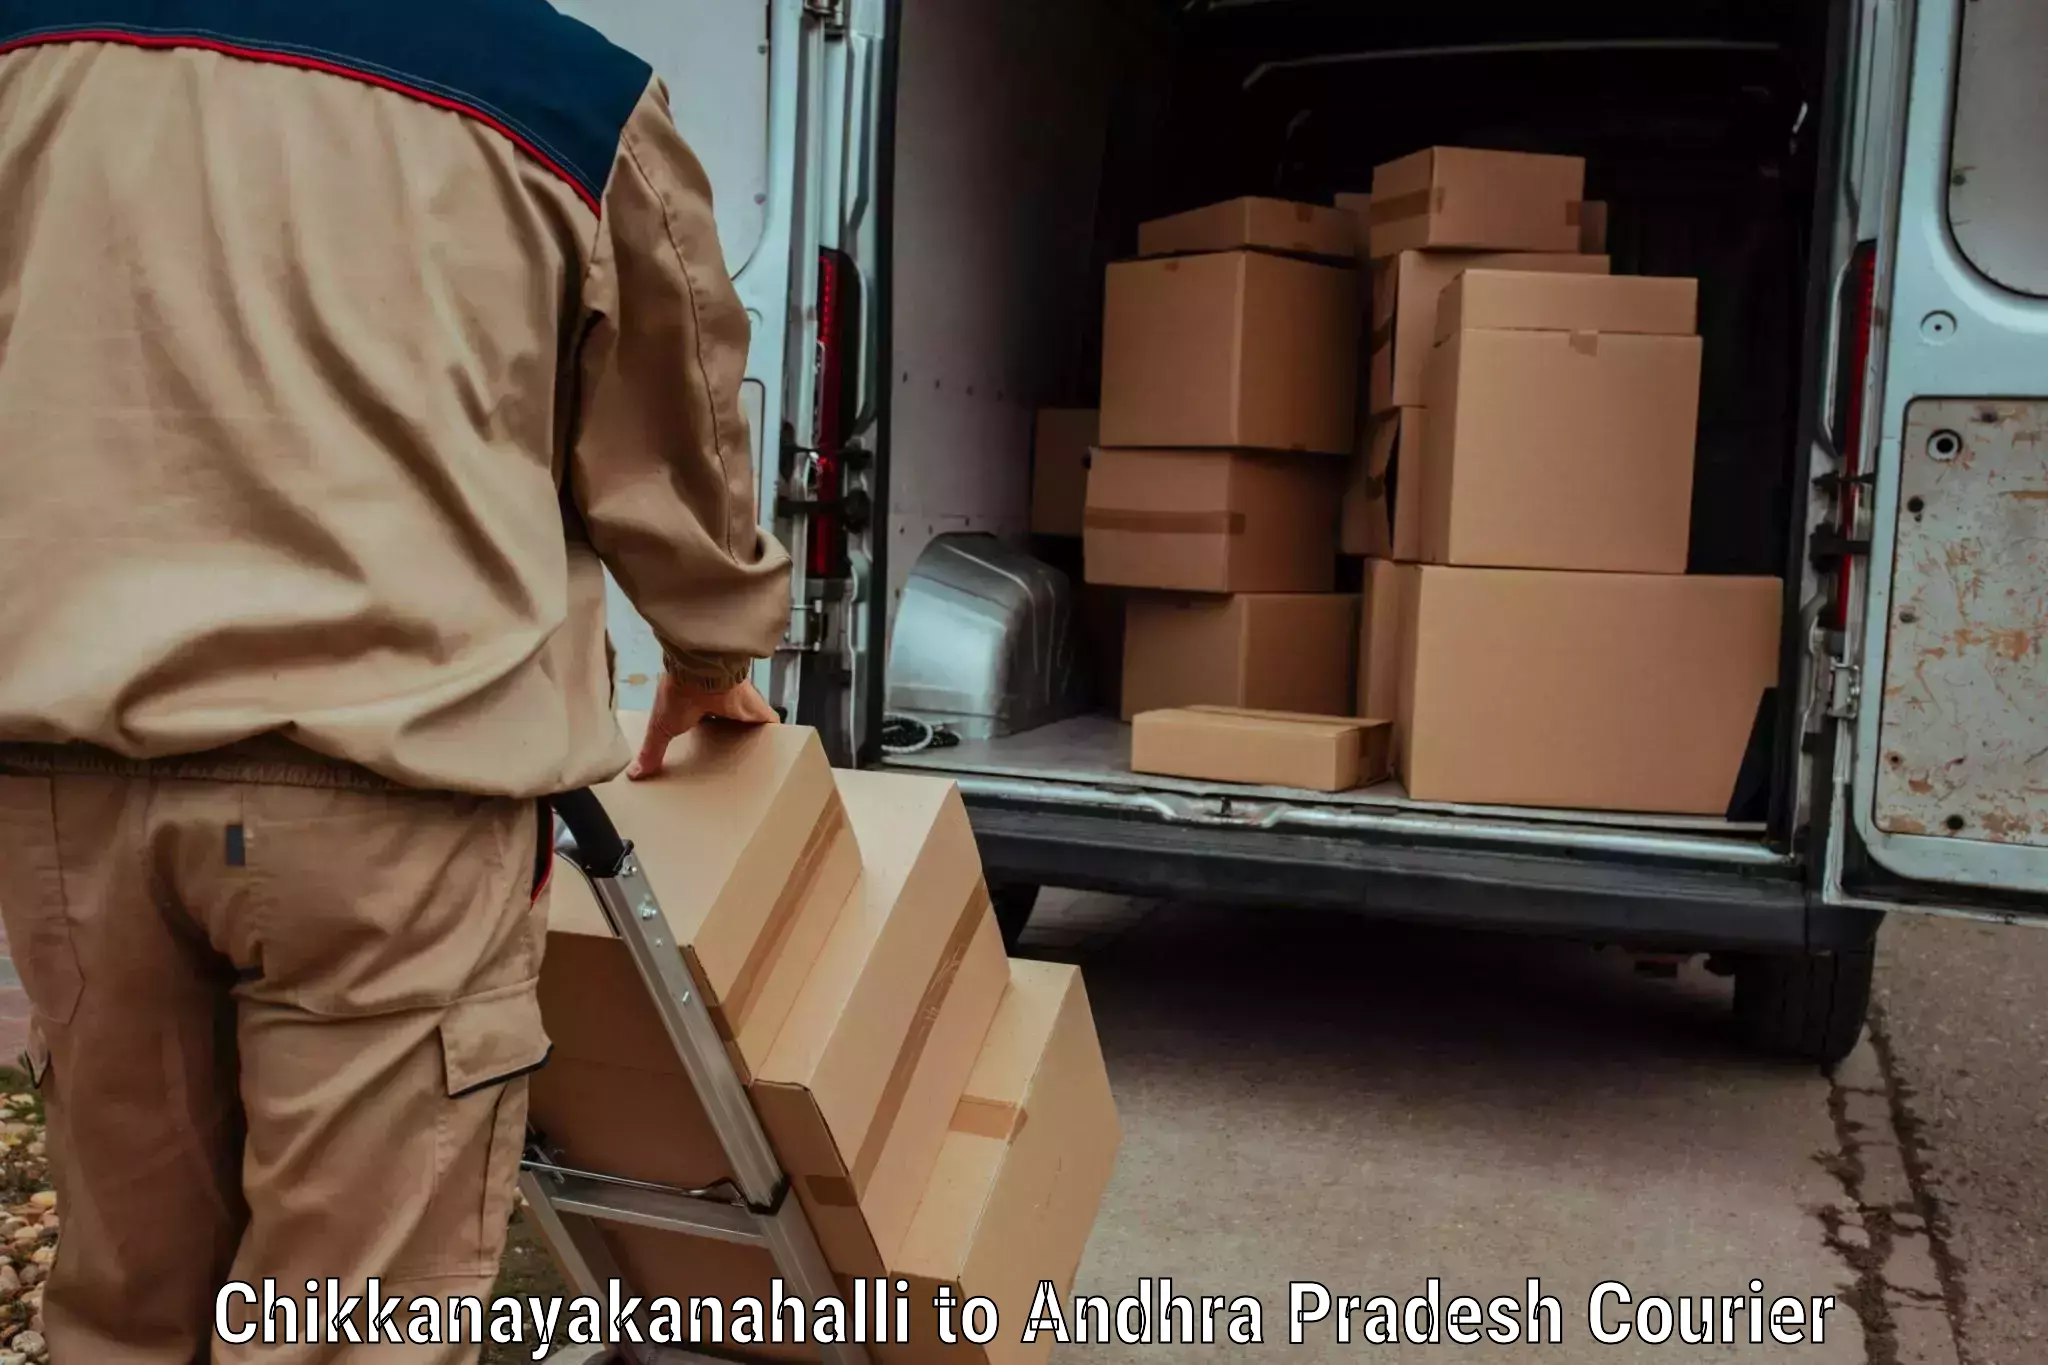 Courier service comparison in Chikkanayakanahalli to Changaroth